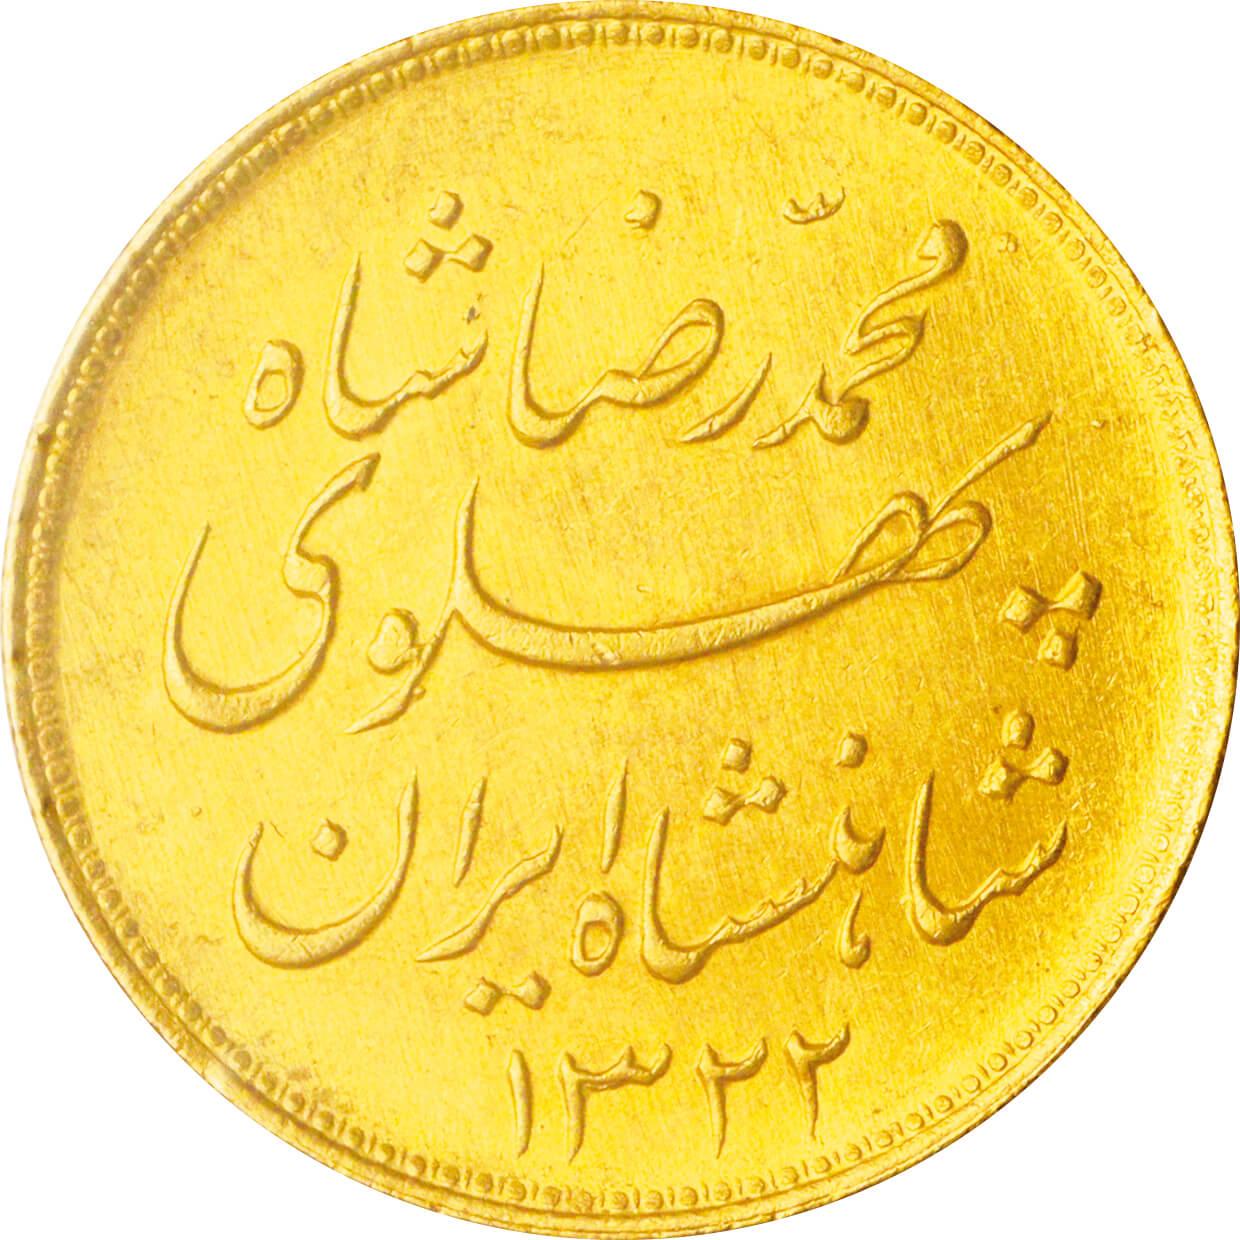 イラン パフラヴィー朝 モハンマド・レザー・シャー 1パーレビ金貨 